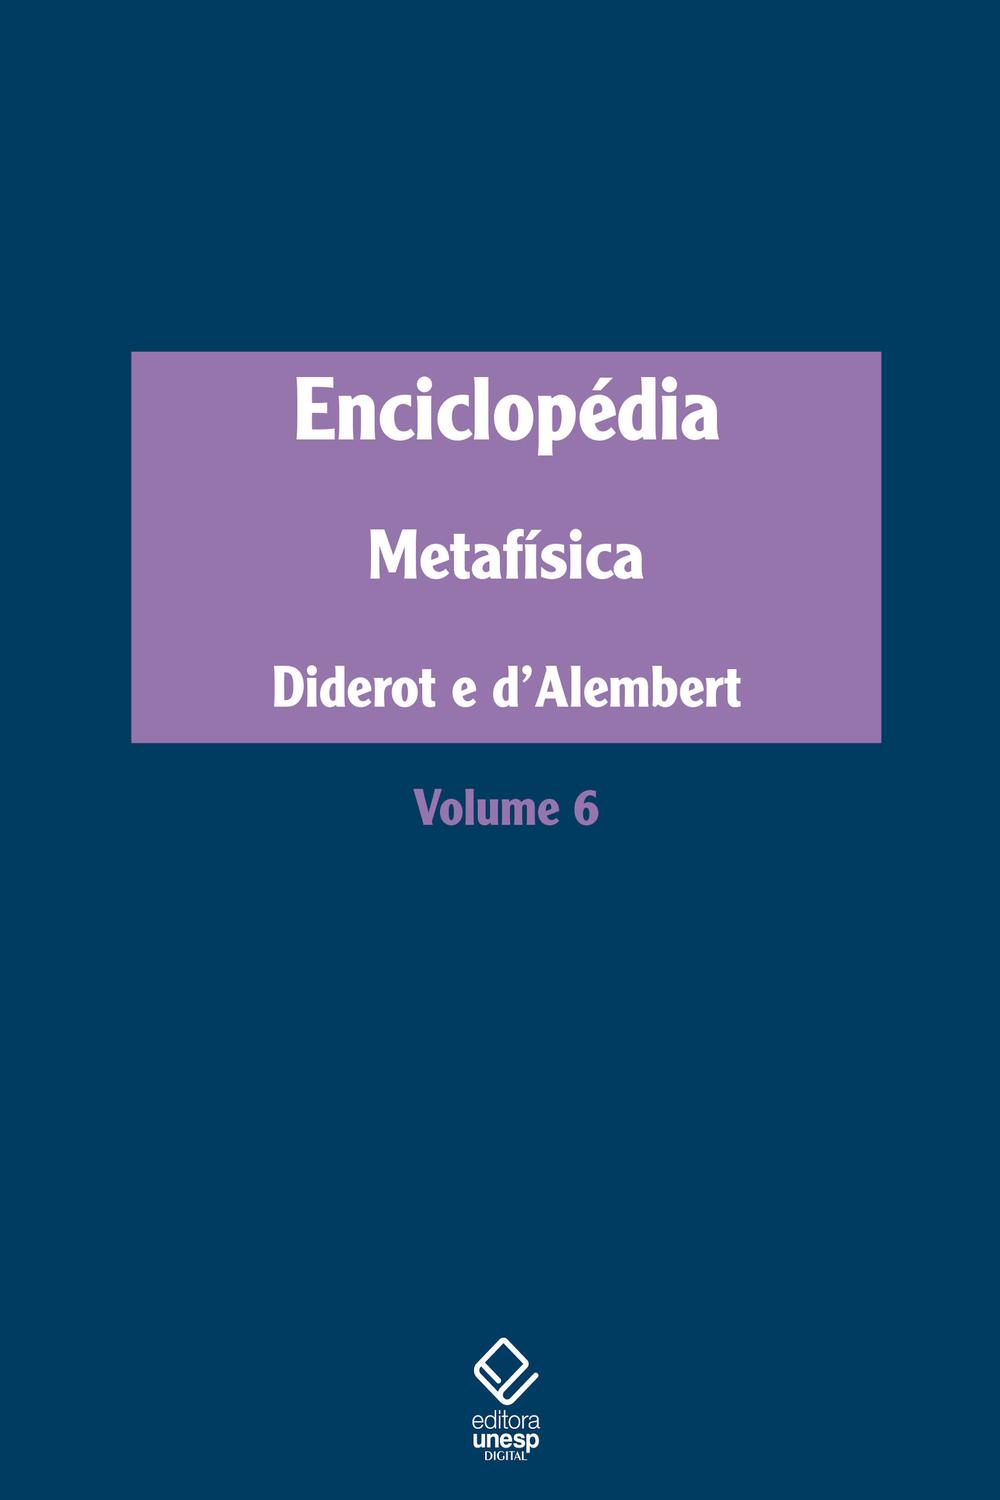 Enciclopédia, ou Dicionário razoado das ciências, das artes e dos ofícios - Denis Diderot, Jean Le Rond D'Alembert